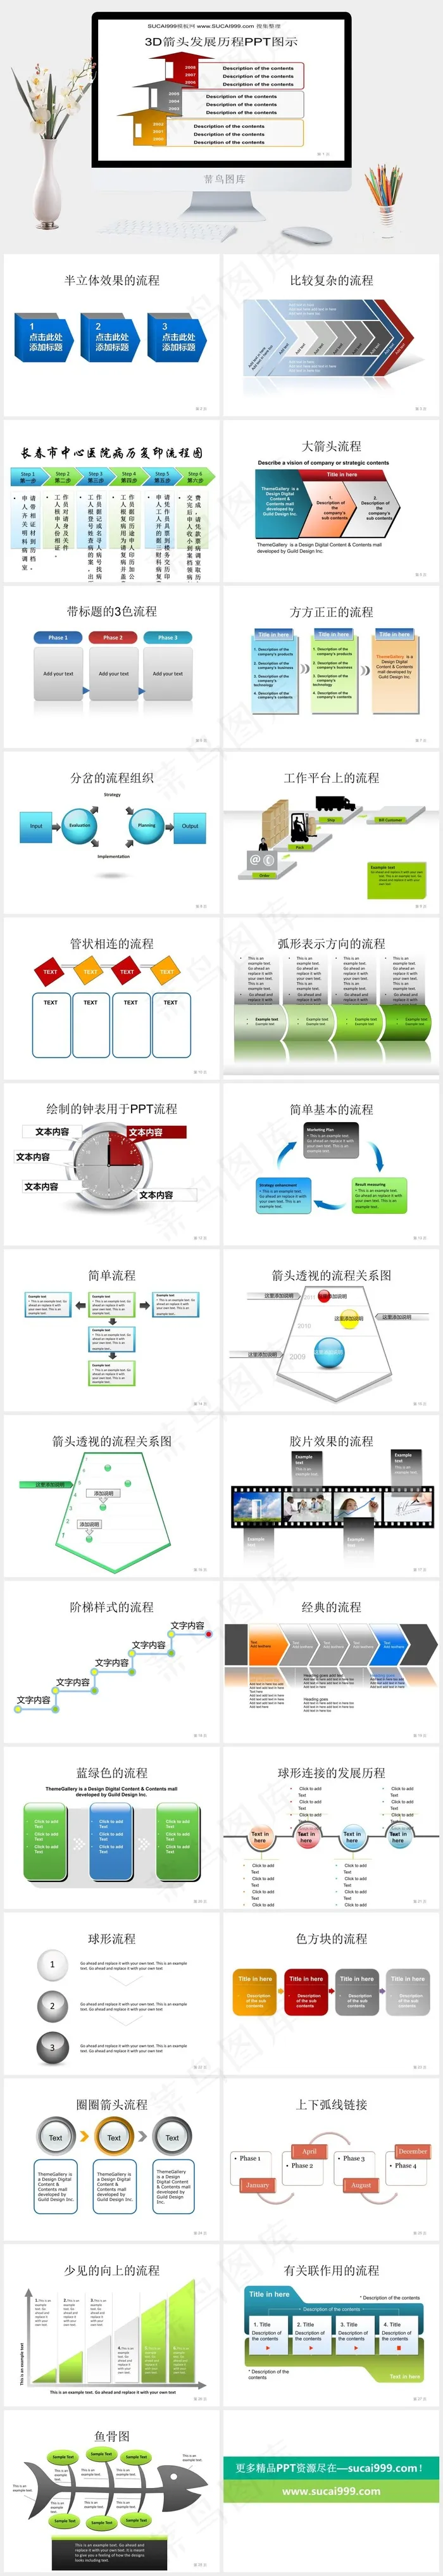 PPT流程图表下载白色营销PPT模板白色营销PPT模板